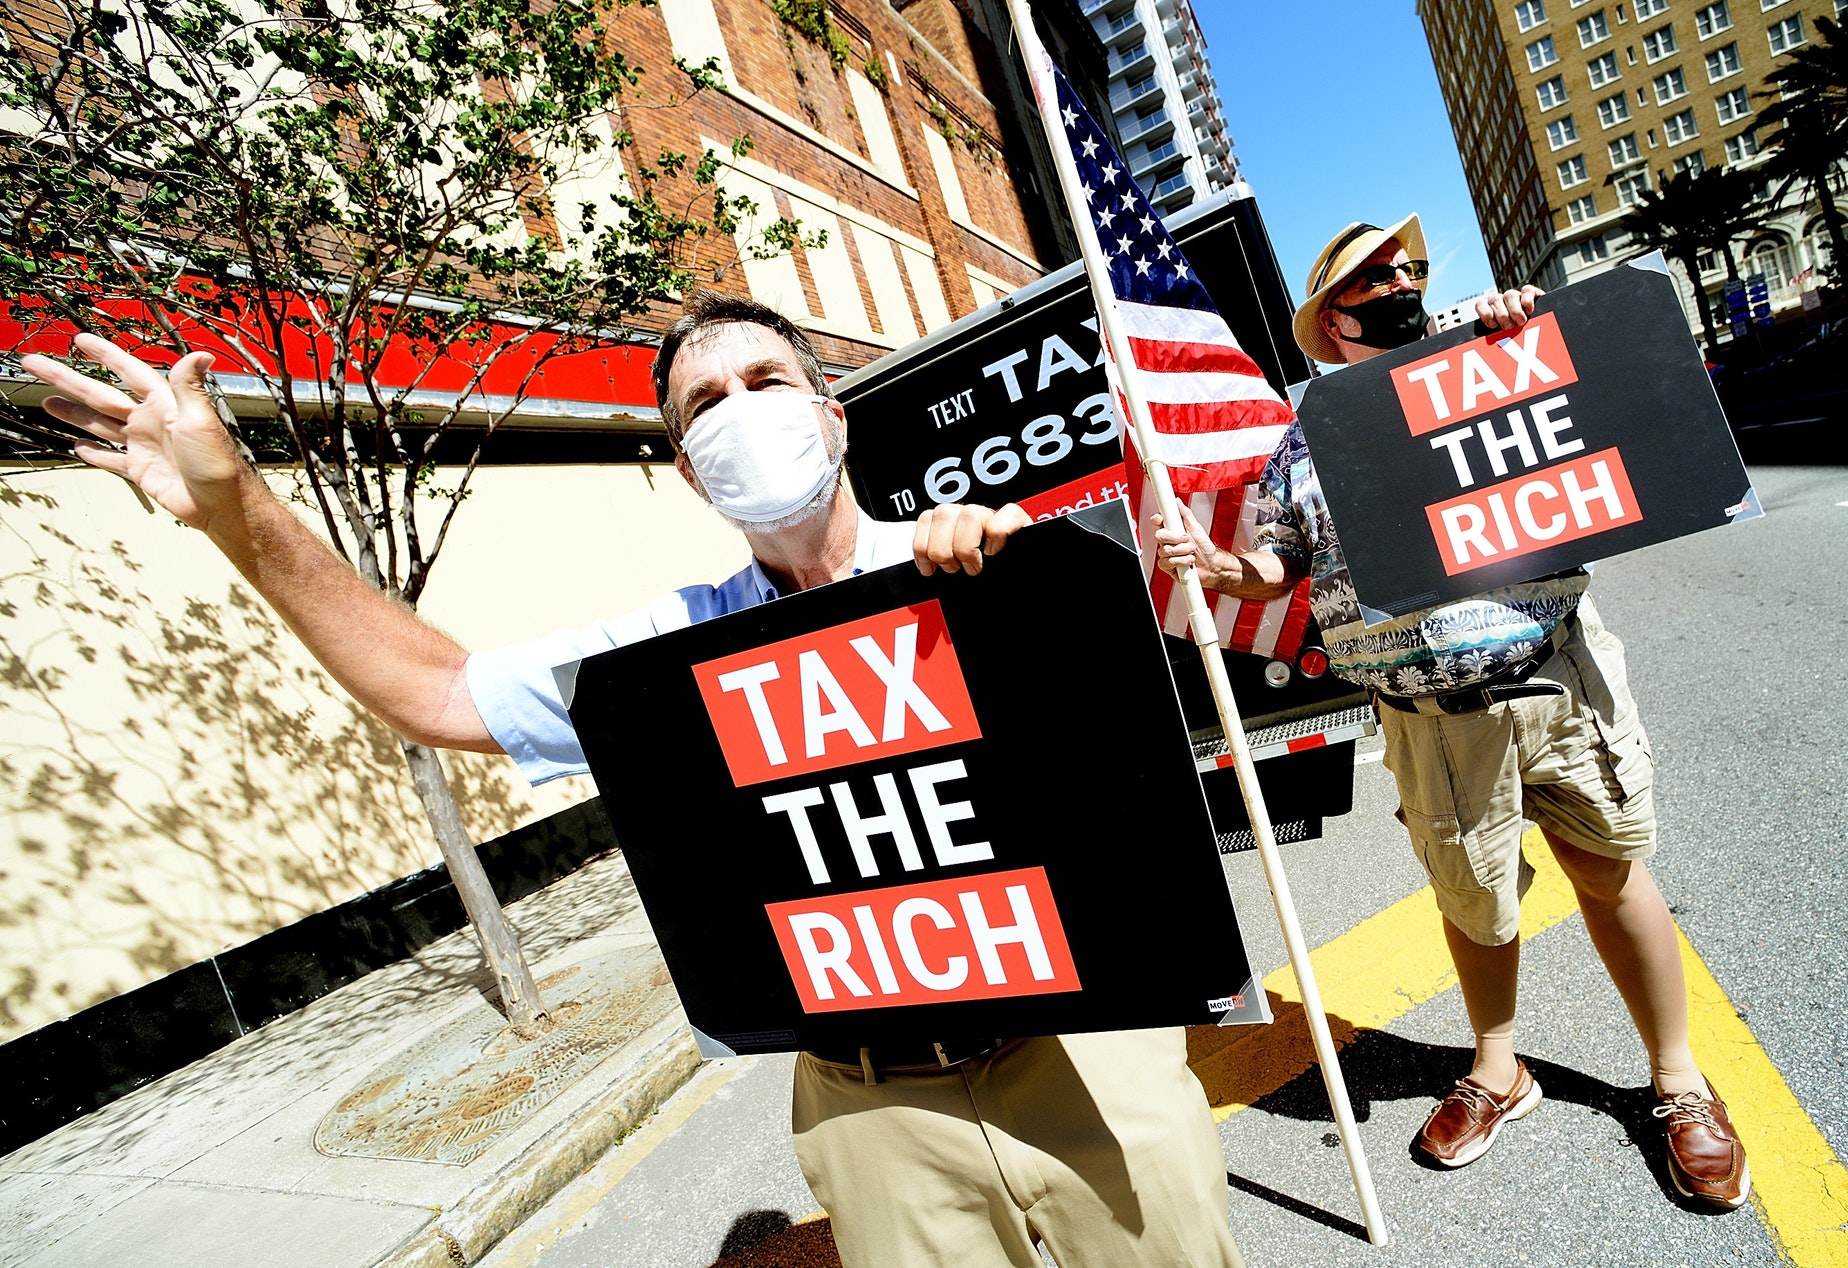 Các tỷ phú đang thúc giục chính phủ các nước cần thay đổi chính sách đánh thuế để người giàu được đóng góp nhiều hơn cho xã hội - Ảnh: Getty Images for Moveon